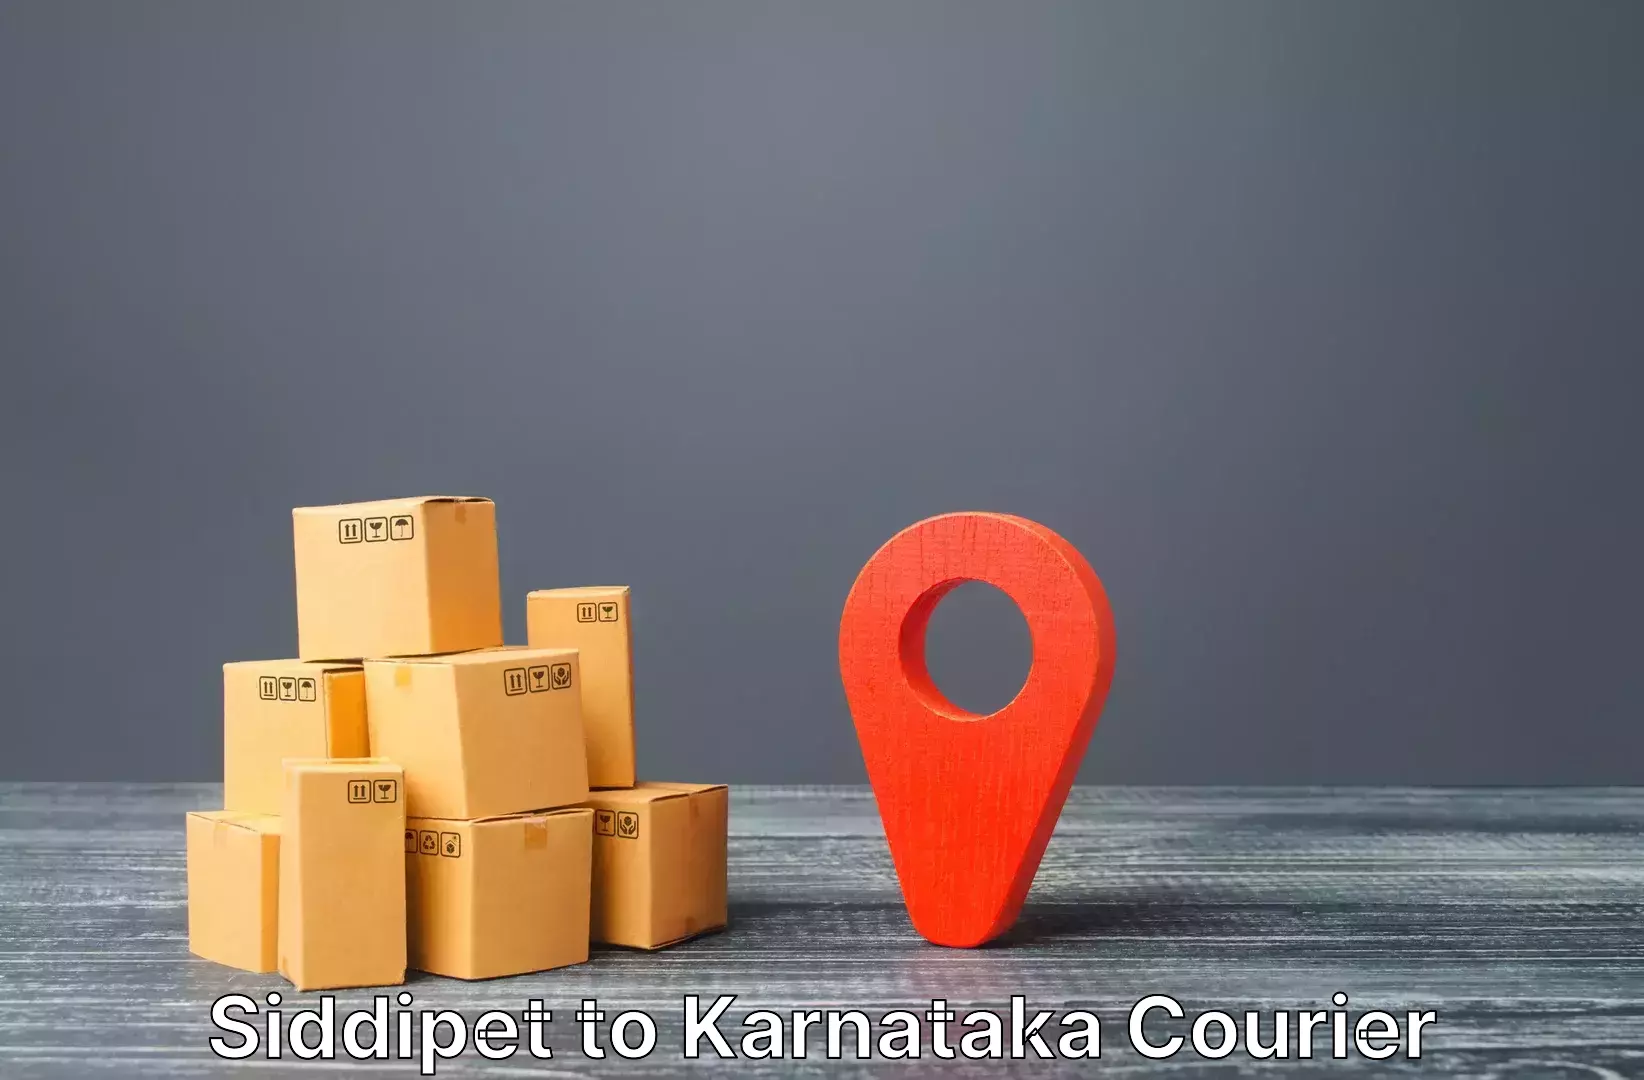 Online luggage shipping booking Siddipet to Karnataka